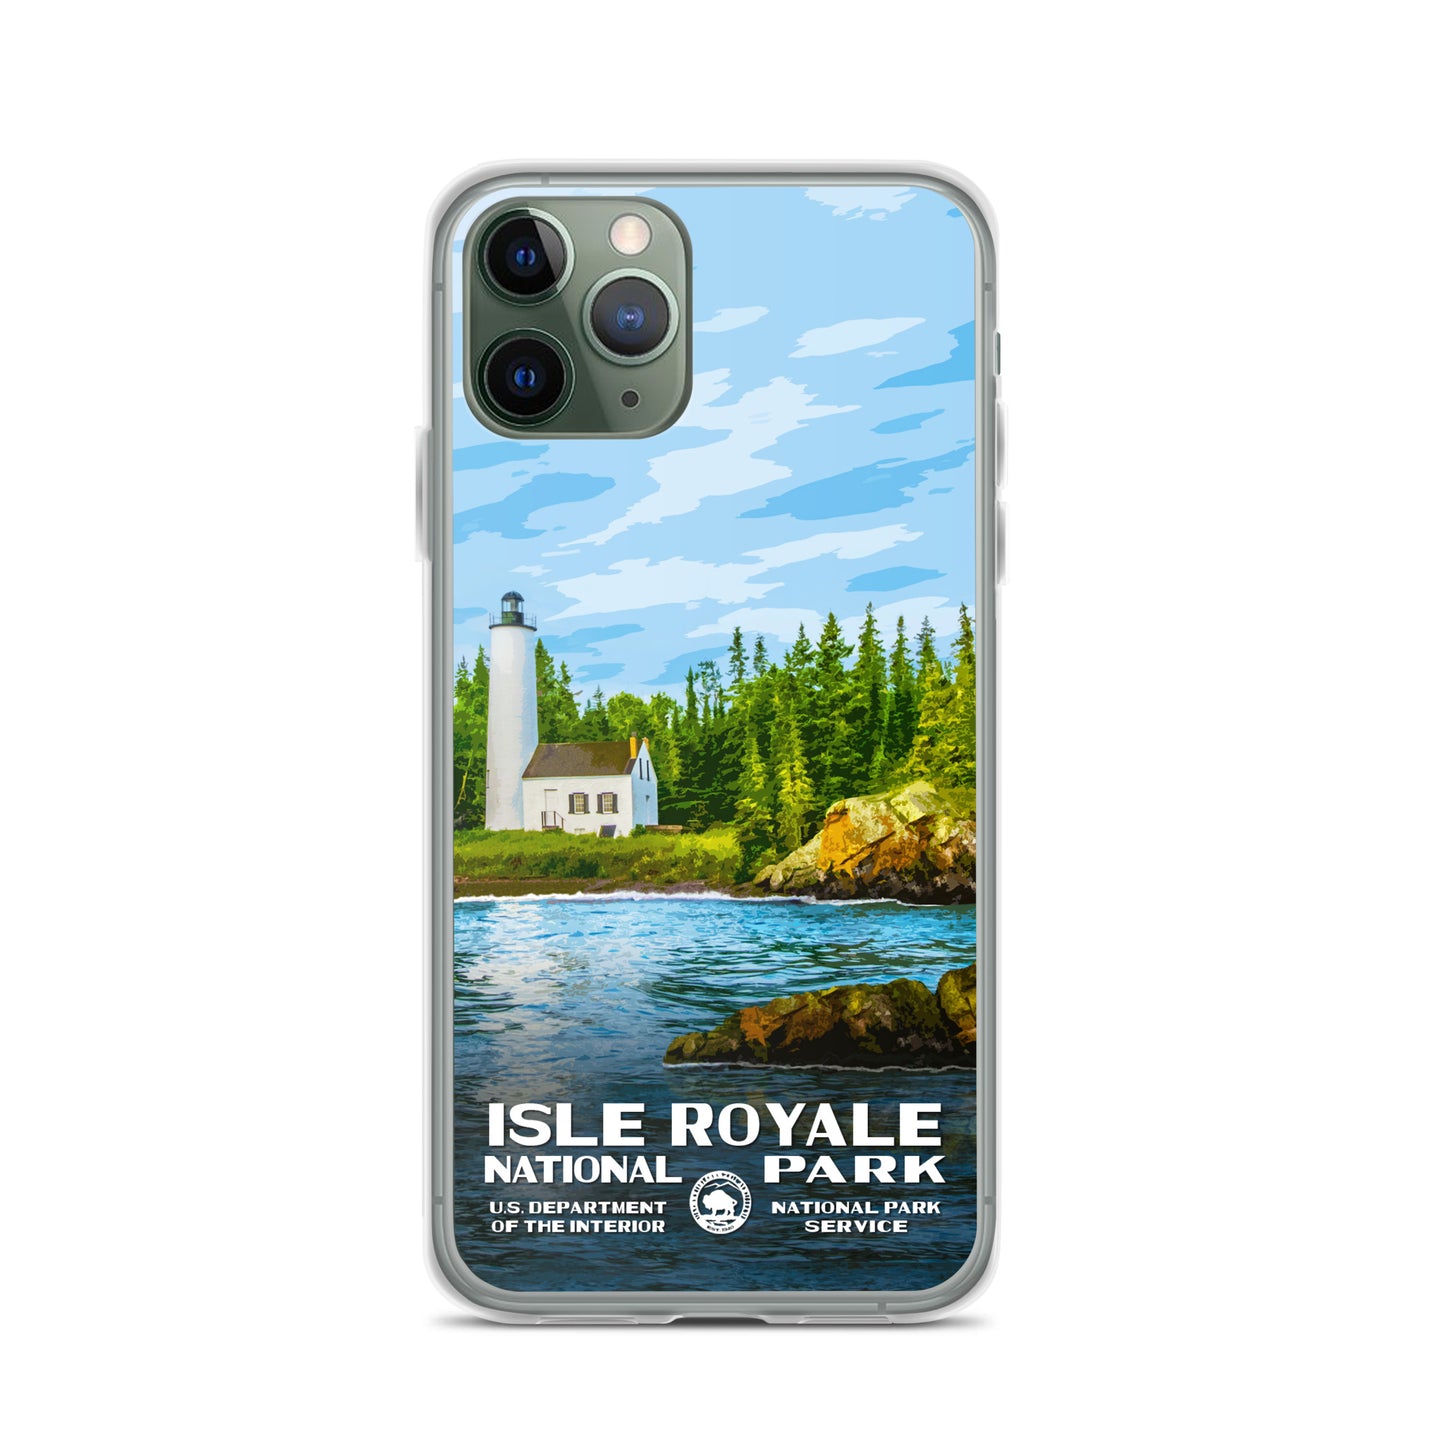 Isle Royale National Park iPhone® Case